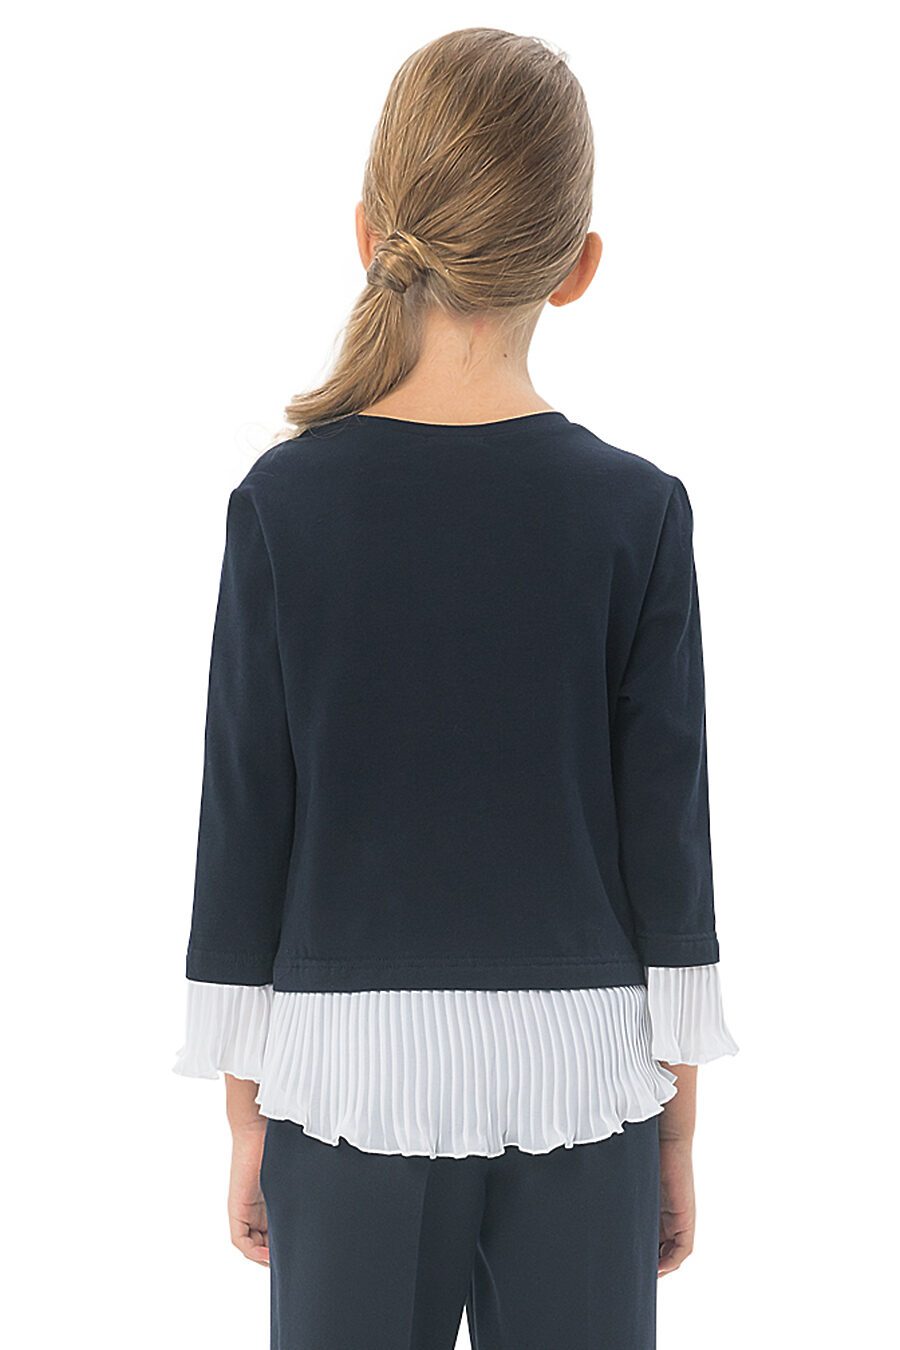 Блуза КАРАМЕЛЛИ (683305), купить в Moyo.moda